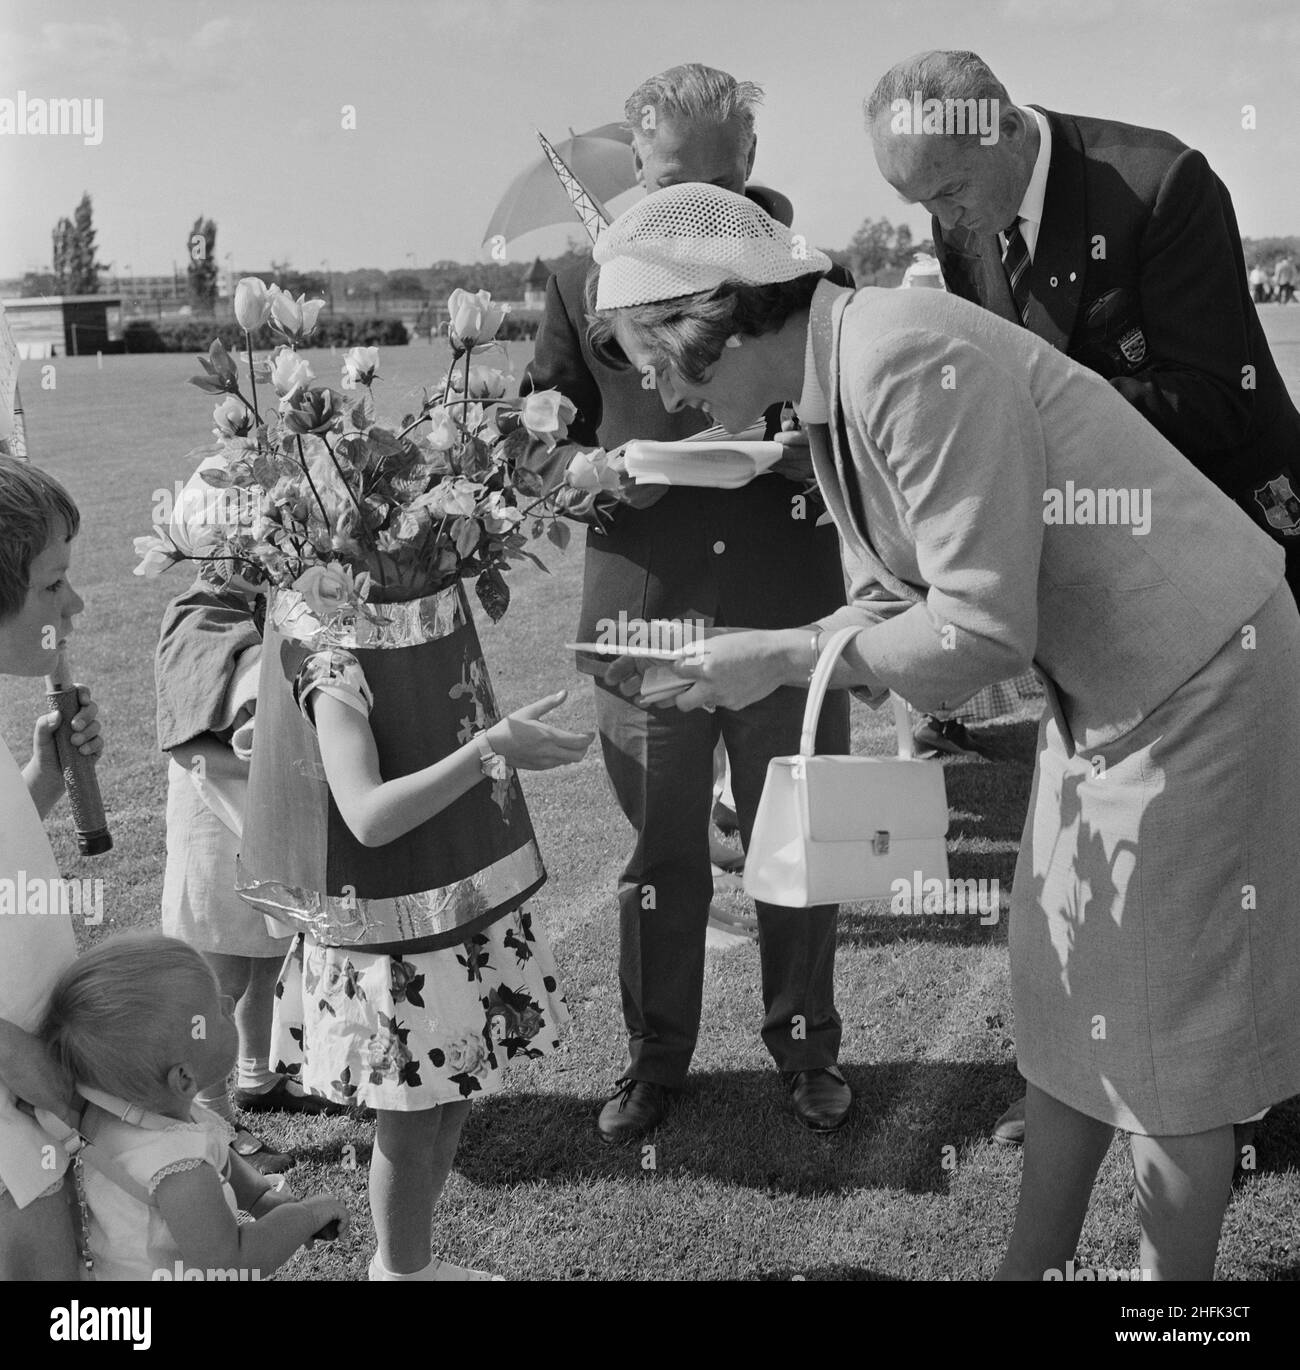 Laing Sports Ground, Rowley Lane, Elstree, Barnett, London, 26/06/1965. Hilda Laing beim jährlichen Laing-Sporttag, bei dem ein kleines Kind, das als Blumenvase gekleidet ist, einen Preis für ein ausgefallenes Kleid überreicht. Im Jahr 1965 wurde Laings jährlicher Sporttag am 26th. Juni auf dem Sportplatz auf der Rowley Lane abgehalten. Neben Fußball und Leichtathletik gab es auch Neuheitenveranstaltungen wie das Sack-Rennen und das Donkey Derby sowie Veranstaltungen für Kinder wie Go-Kart-Rennen, Wettbewerbe für ausgefallene Kleidung und Pony-Fahrten. Stockfoto